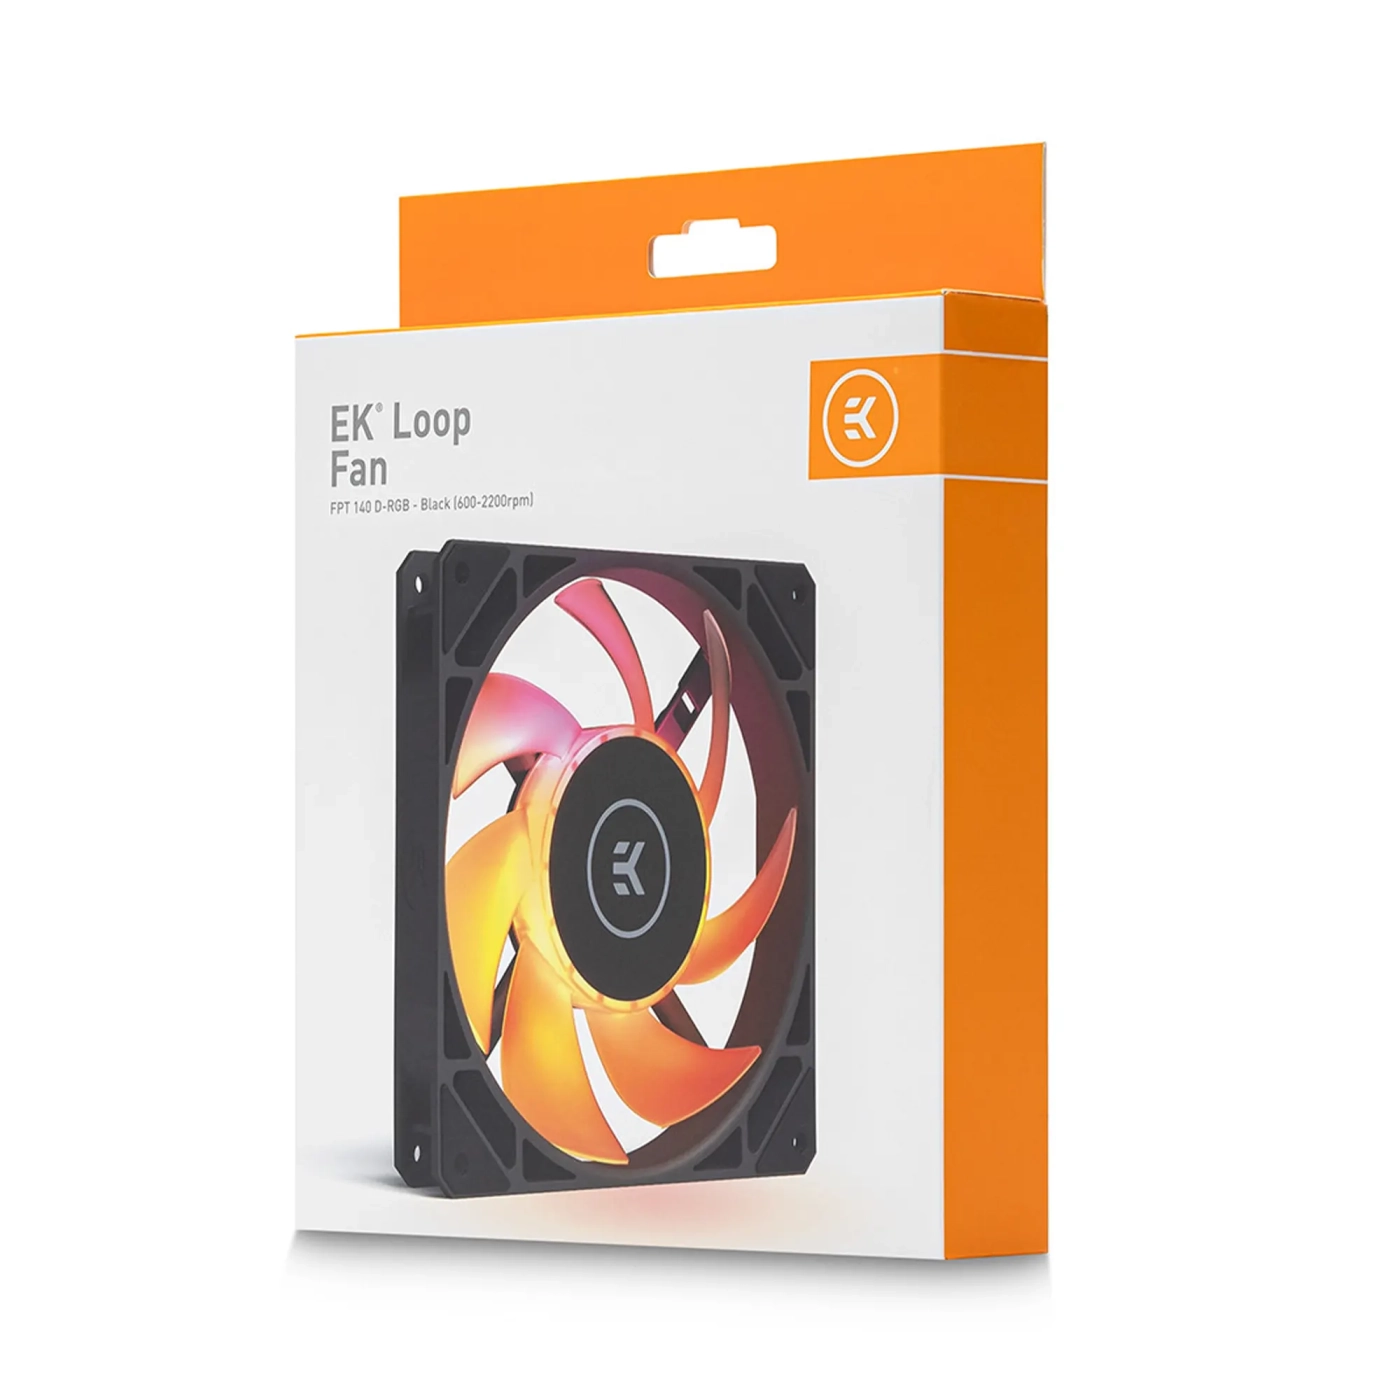 Купить Вентилятор EKWB EK-Loop Fan FPT 140 D-RGB - Black (600-2200rpm) - фото 6